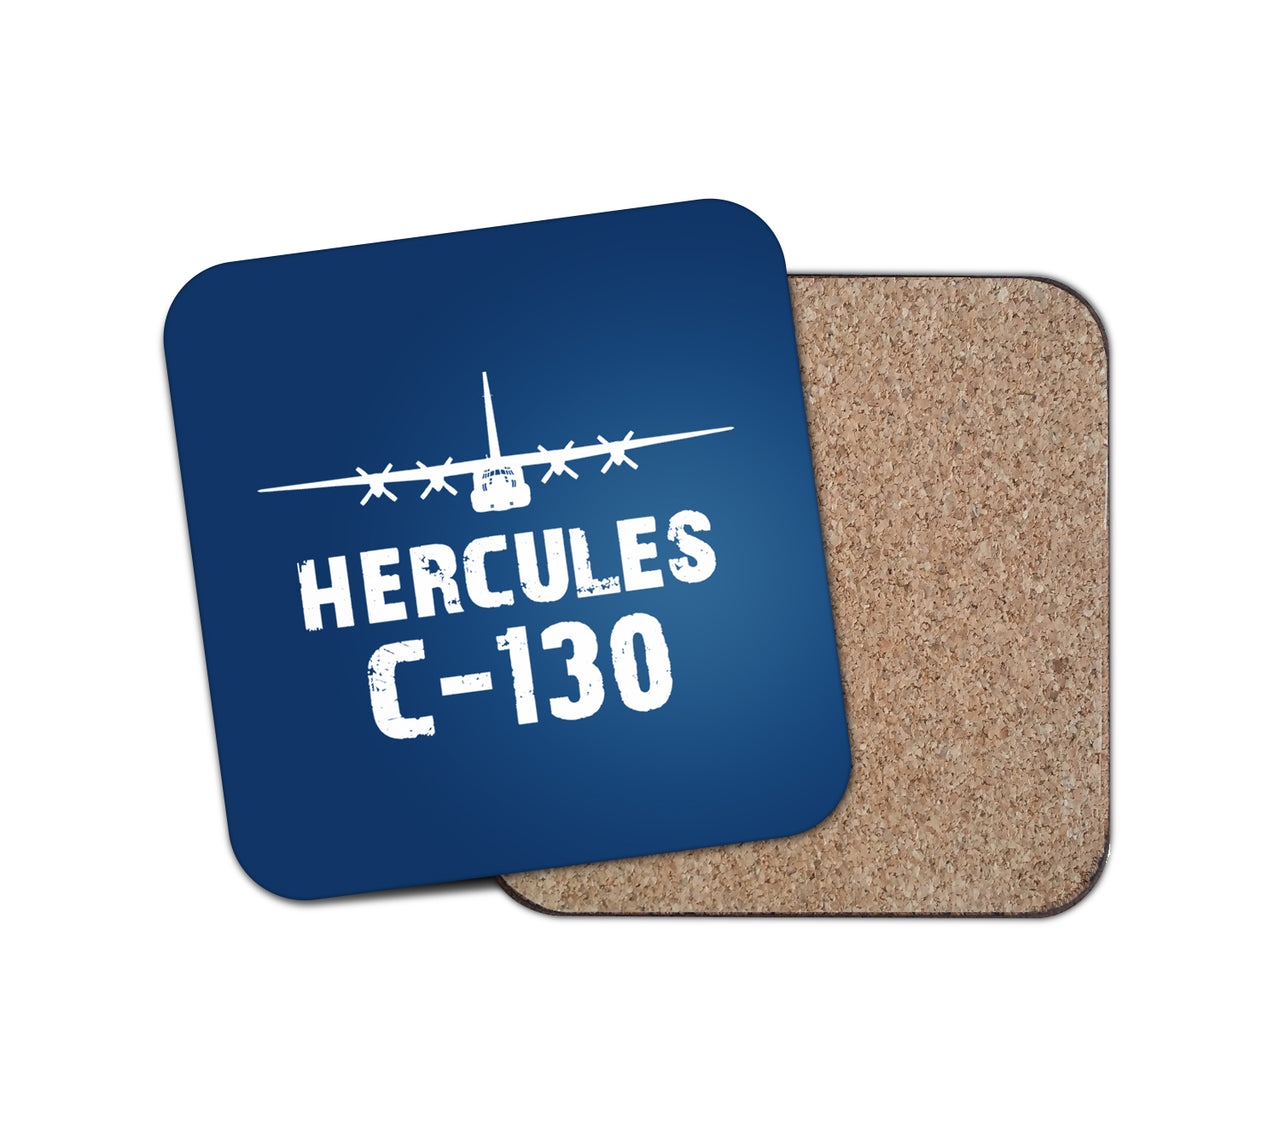 Hercules C-130 & Plane Designed Coasters